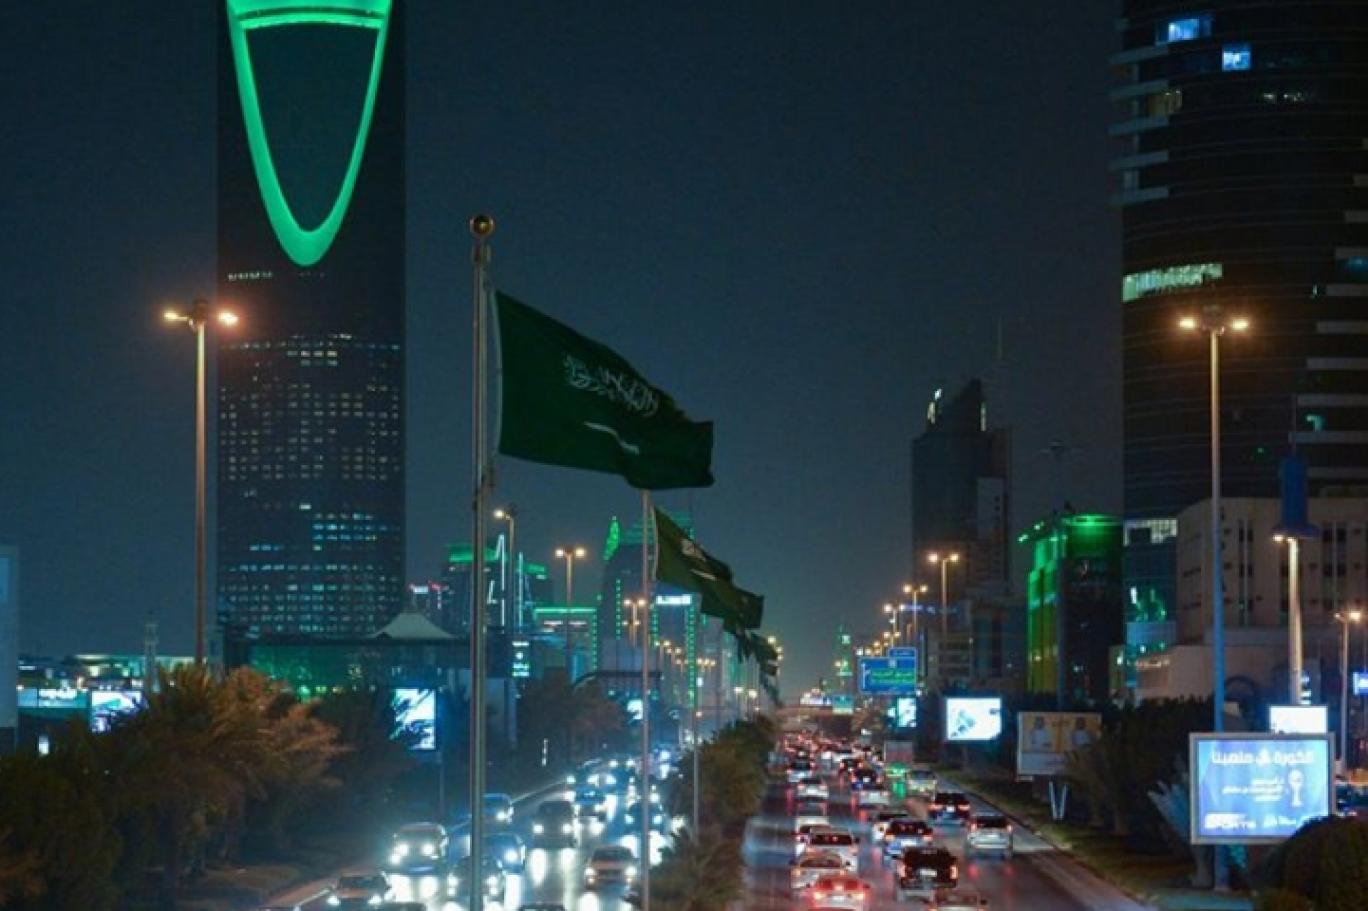 السعودية تُطلق حملة "مُستقبلك سياحة" لتوفير 100 ألف وظيفة لمواطنيها